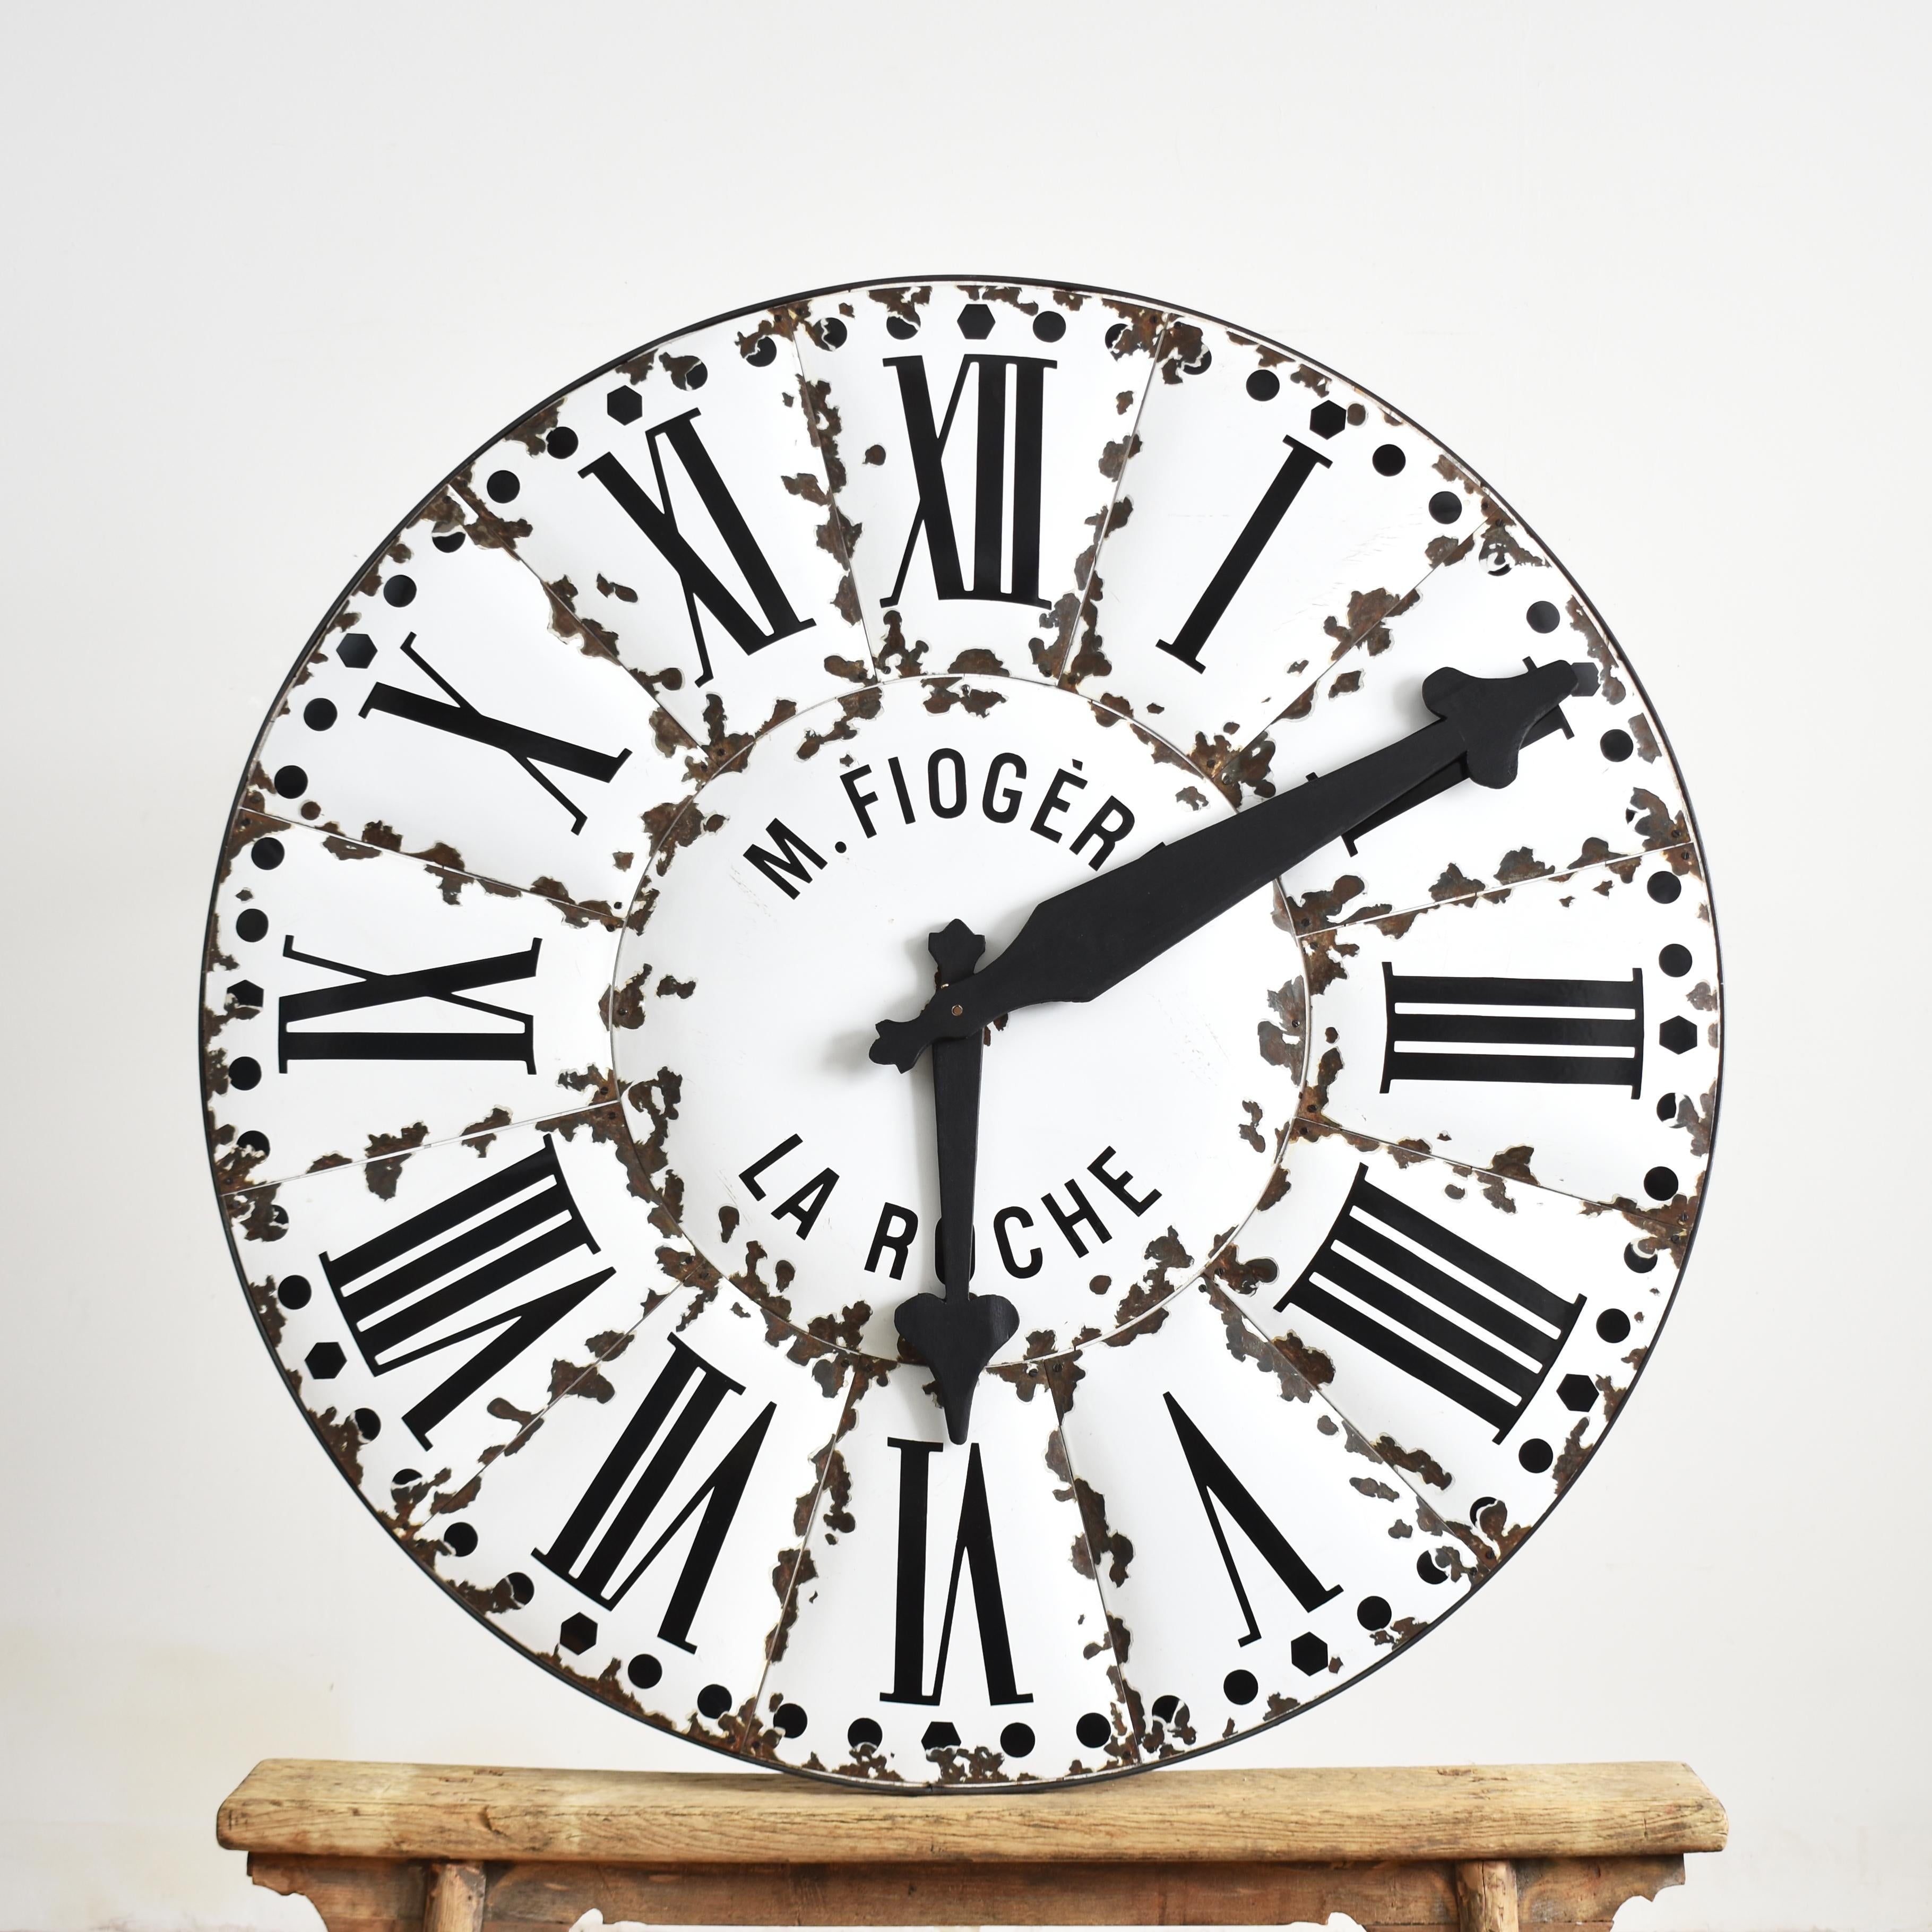 Grand cadran original d'une horloge tour française ancienne en émail

Un superbe cadran d'horloge à tourelle original du début du siècle provenant de La Roche, en France. Le cadran de l'horloge est composé de pièces individuelles convexes en émail